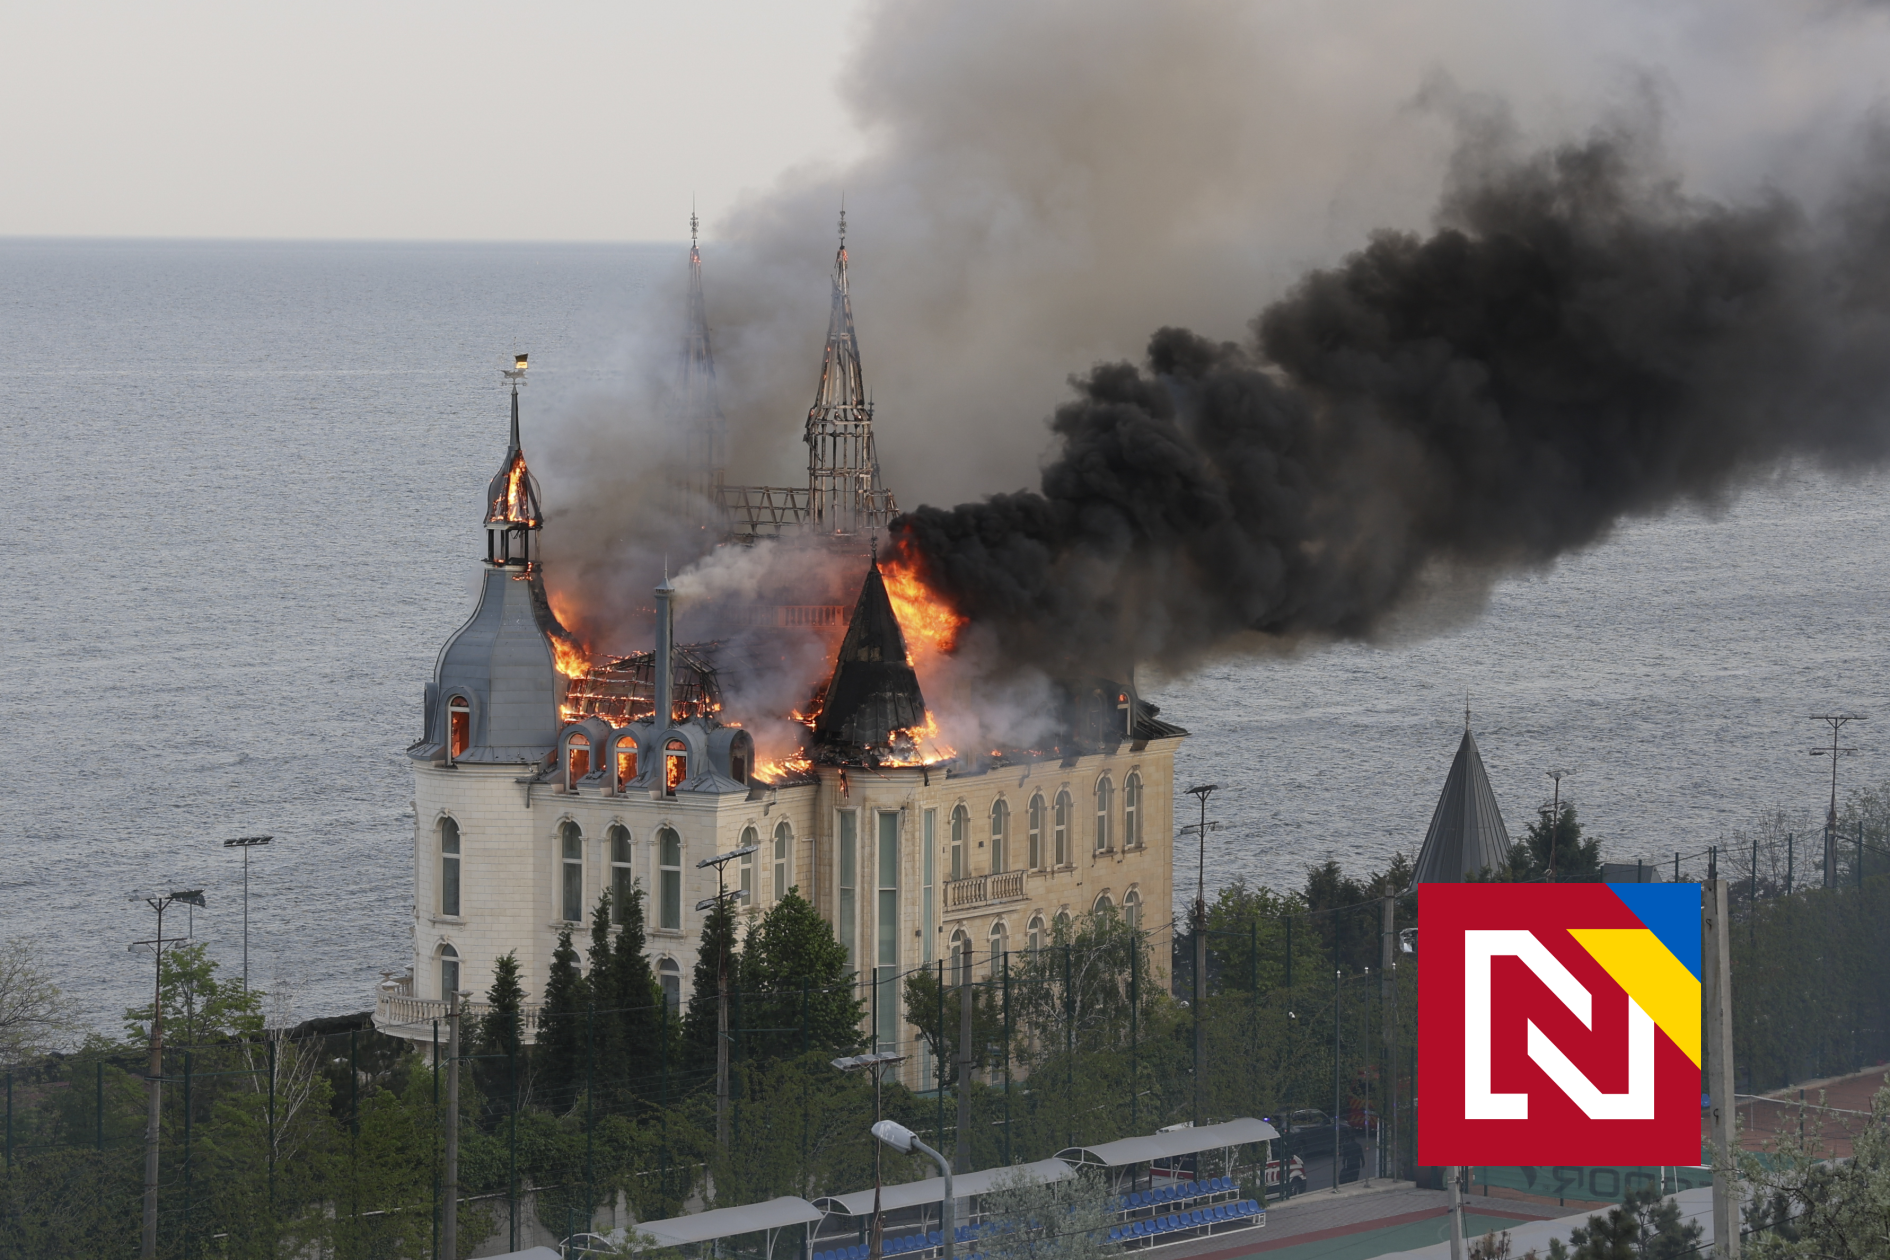 Château, bureau de poste et gymnase d’Harry Potter incendiés.  La Russie intensifie ses attaques contre Odessa avec une arme insidieuse